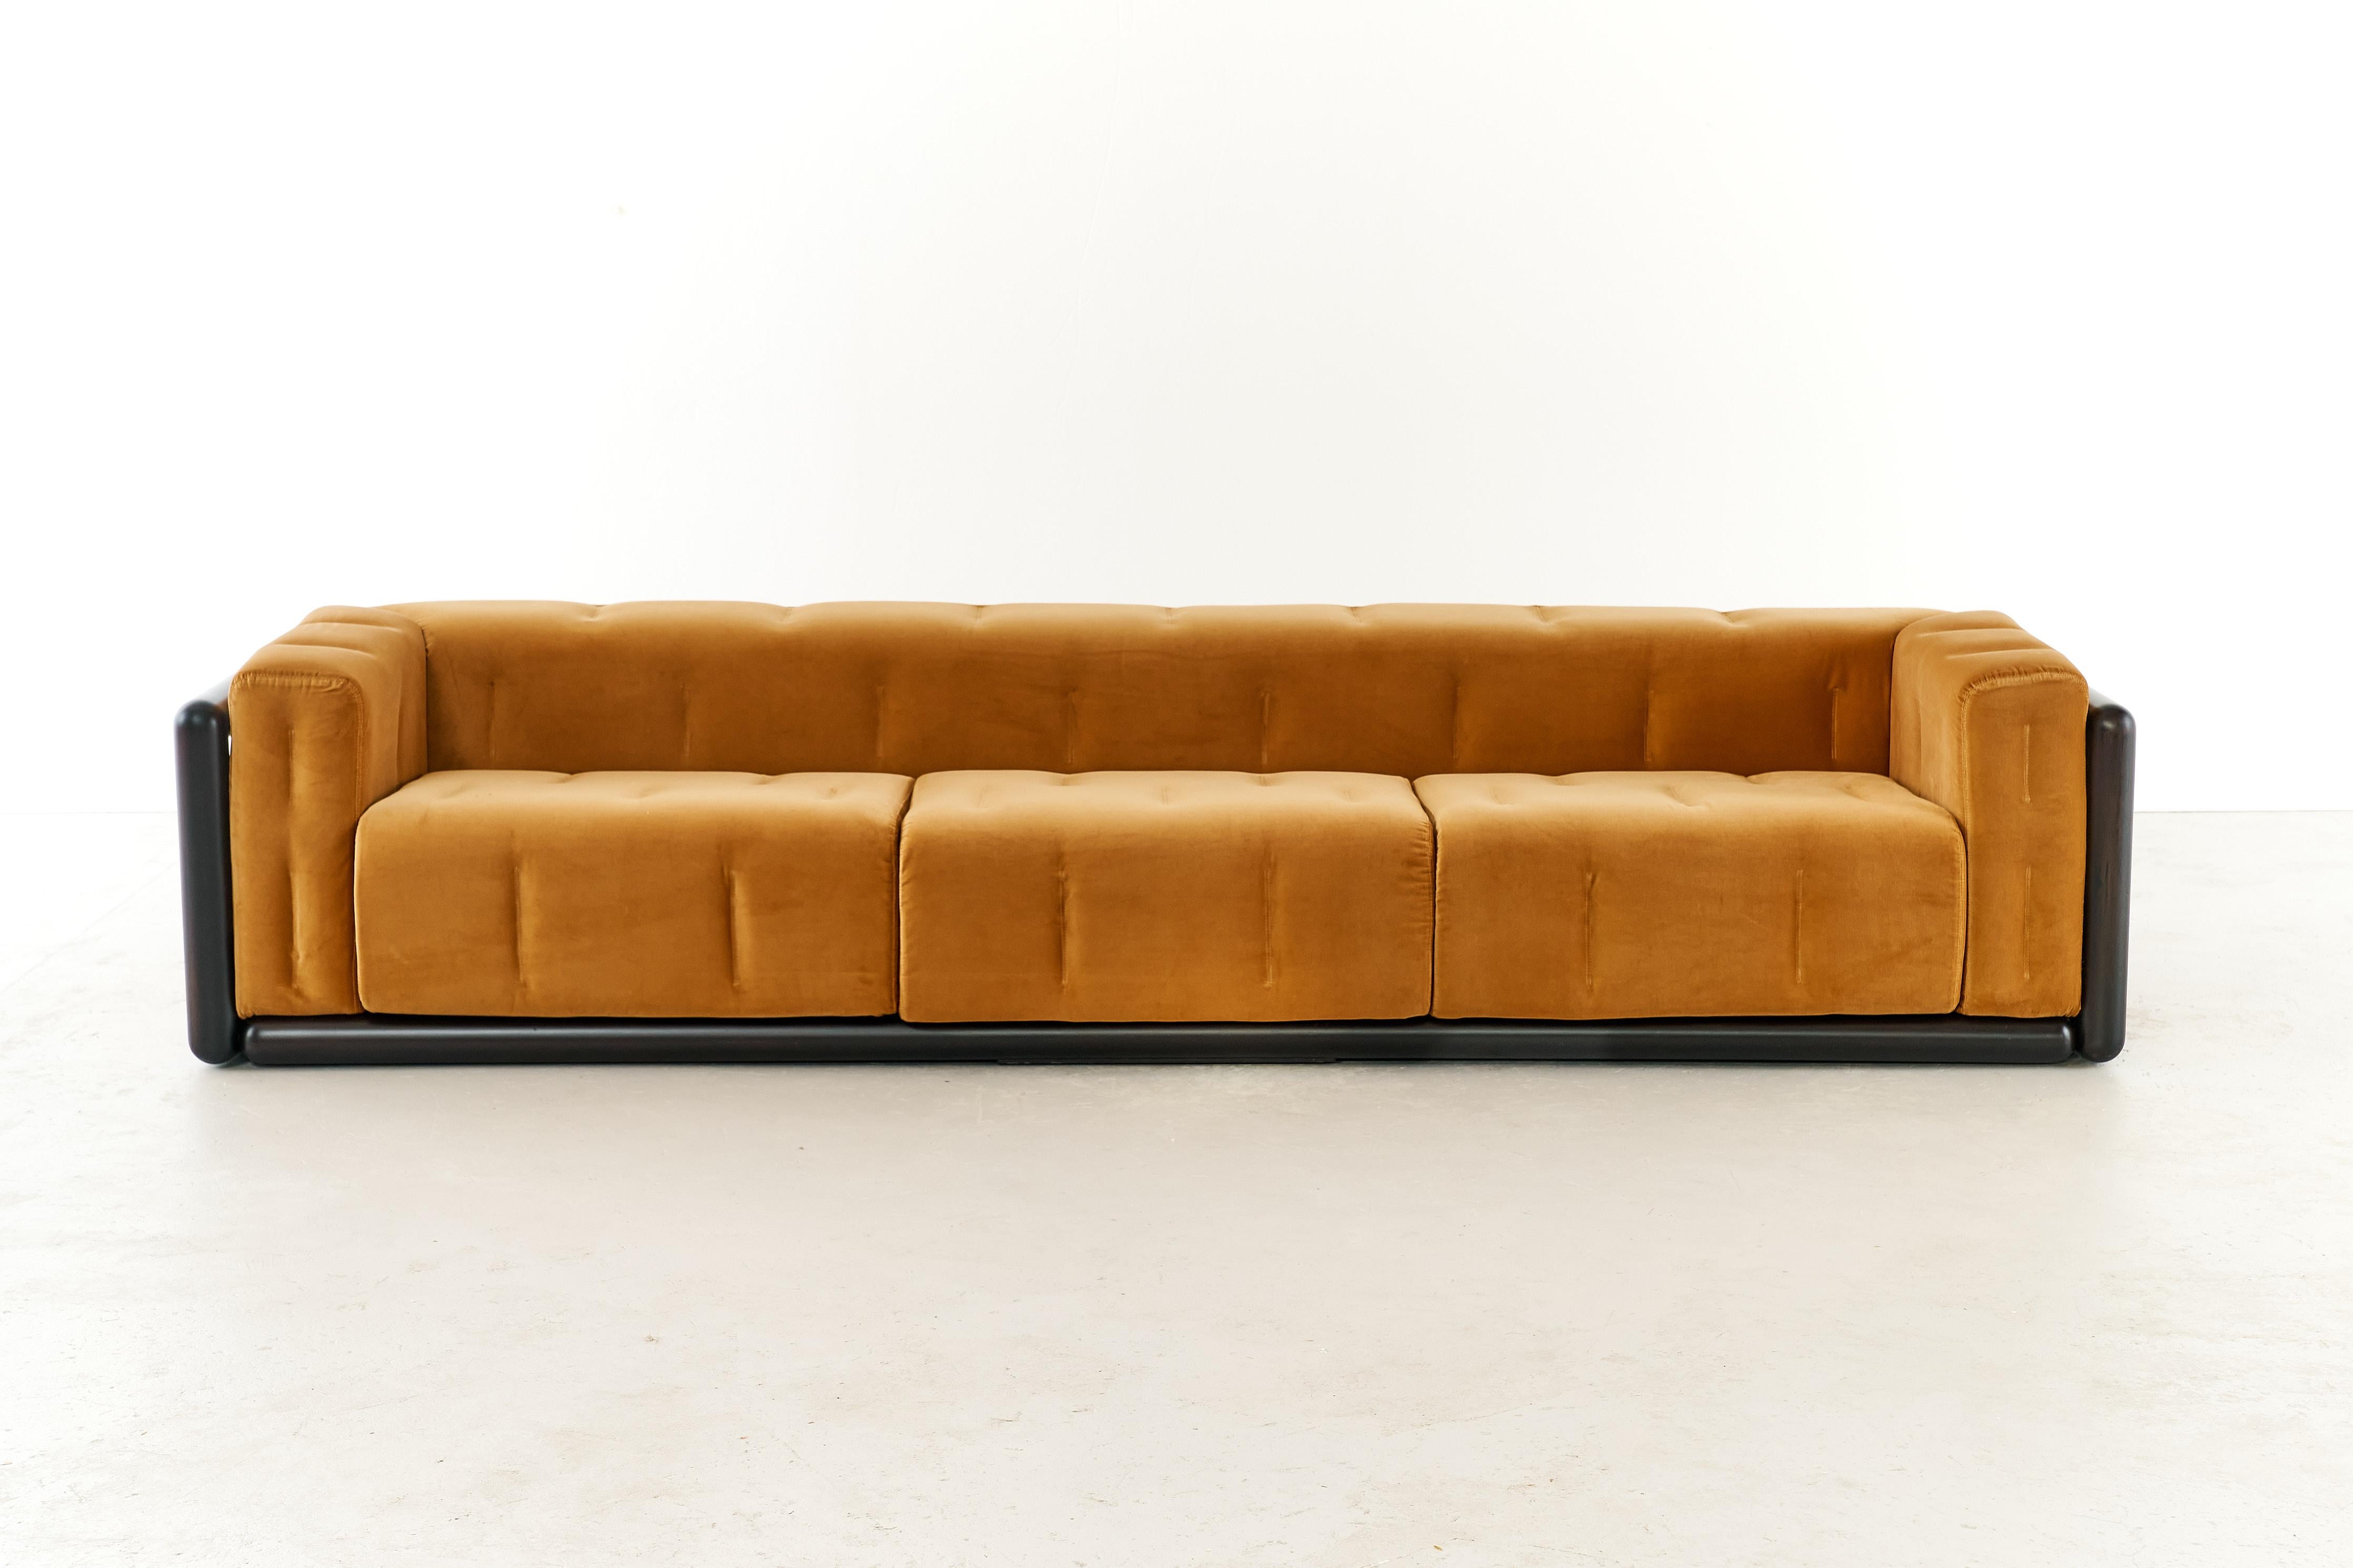 Le canapé Cornaro, conçu par Carlo Scarpa en 1973 et produit par Simon, est un meuble remarquable connu pour son style unique et son excellente qualité de fabrication. La vision de Scarpa a mêlé tradition et innovation, créant une pièce intemporelle